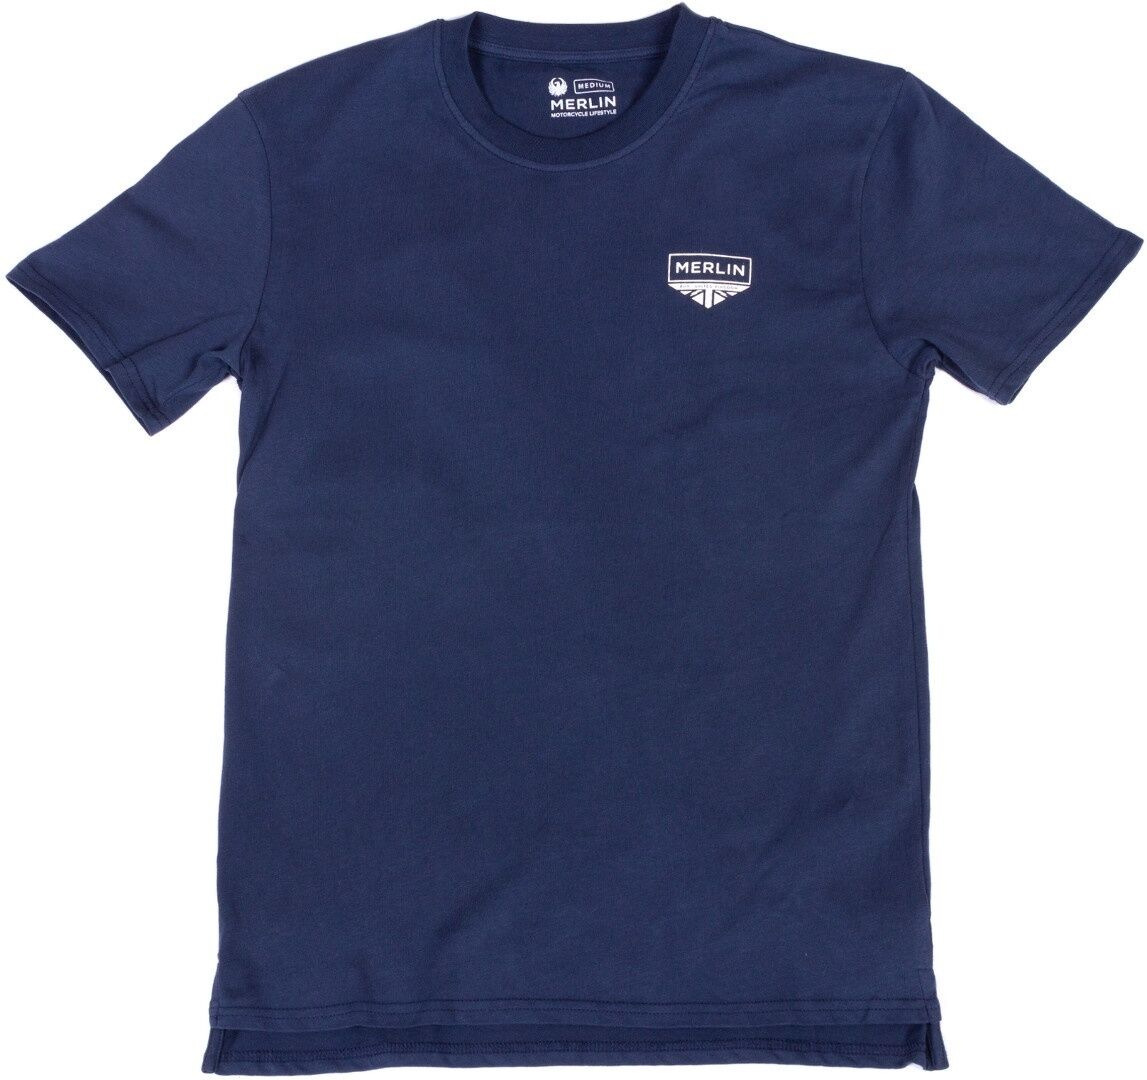 Merlin Truro Signature Camiseta - Azul (3XL)